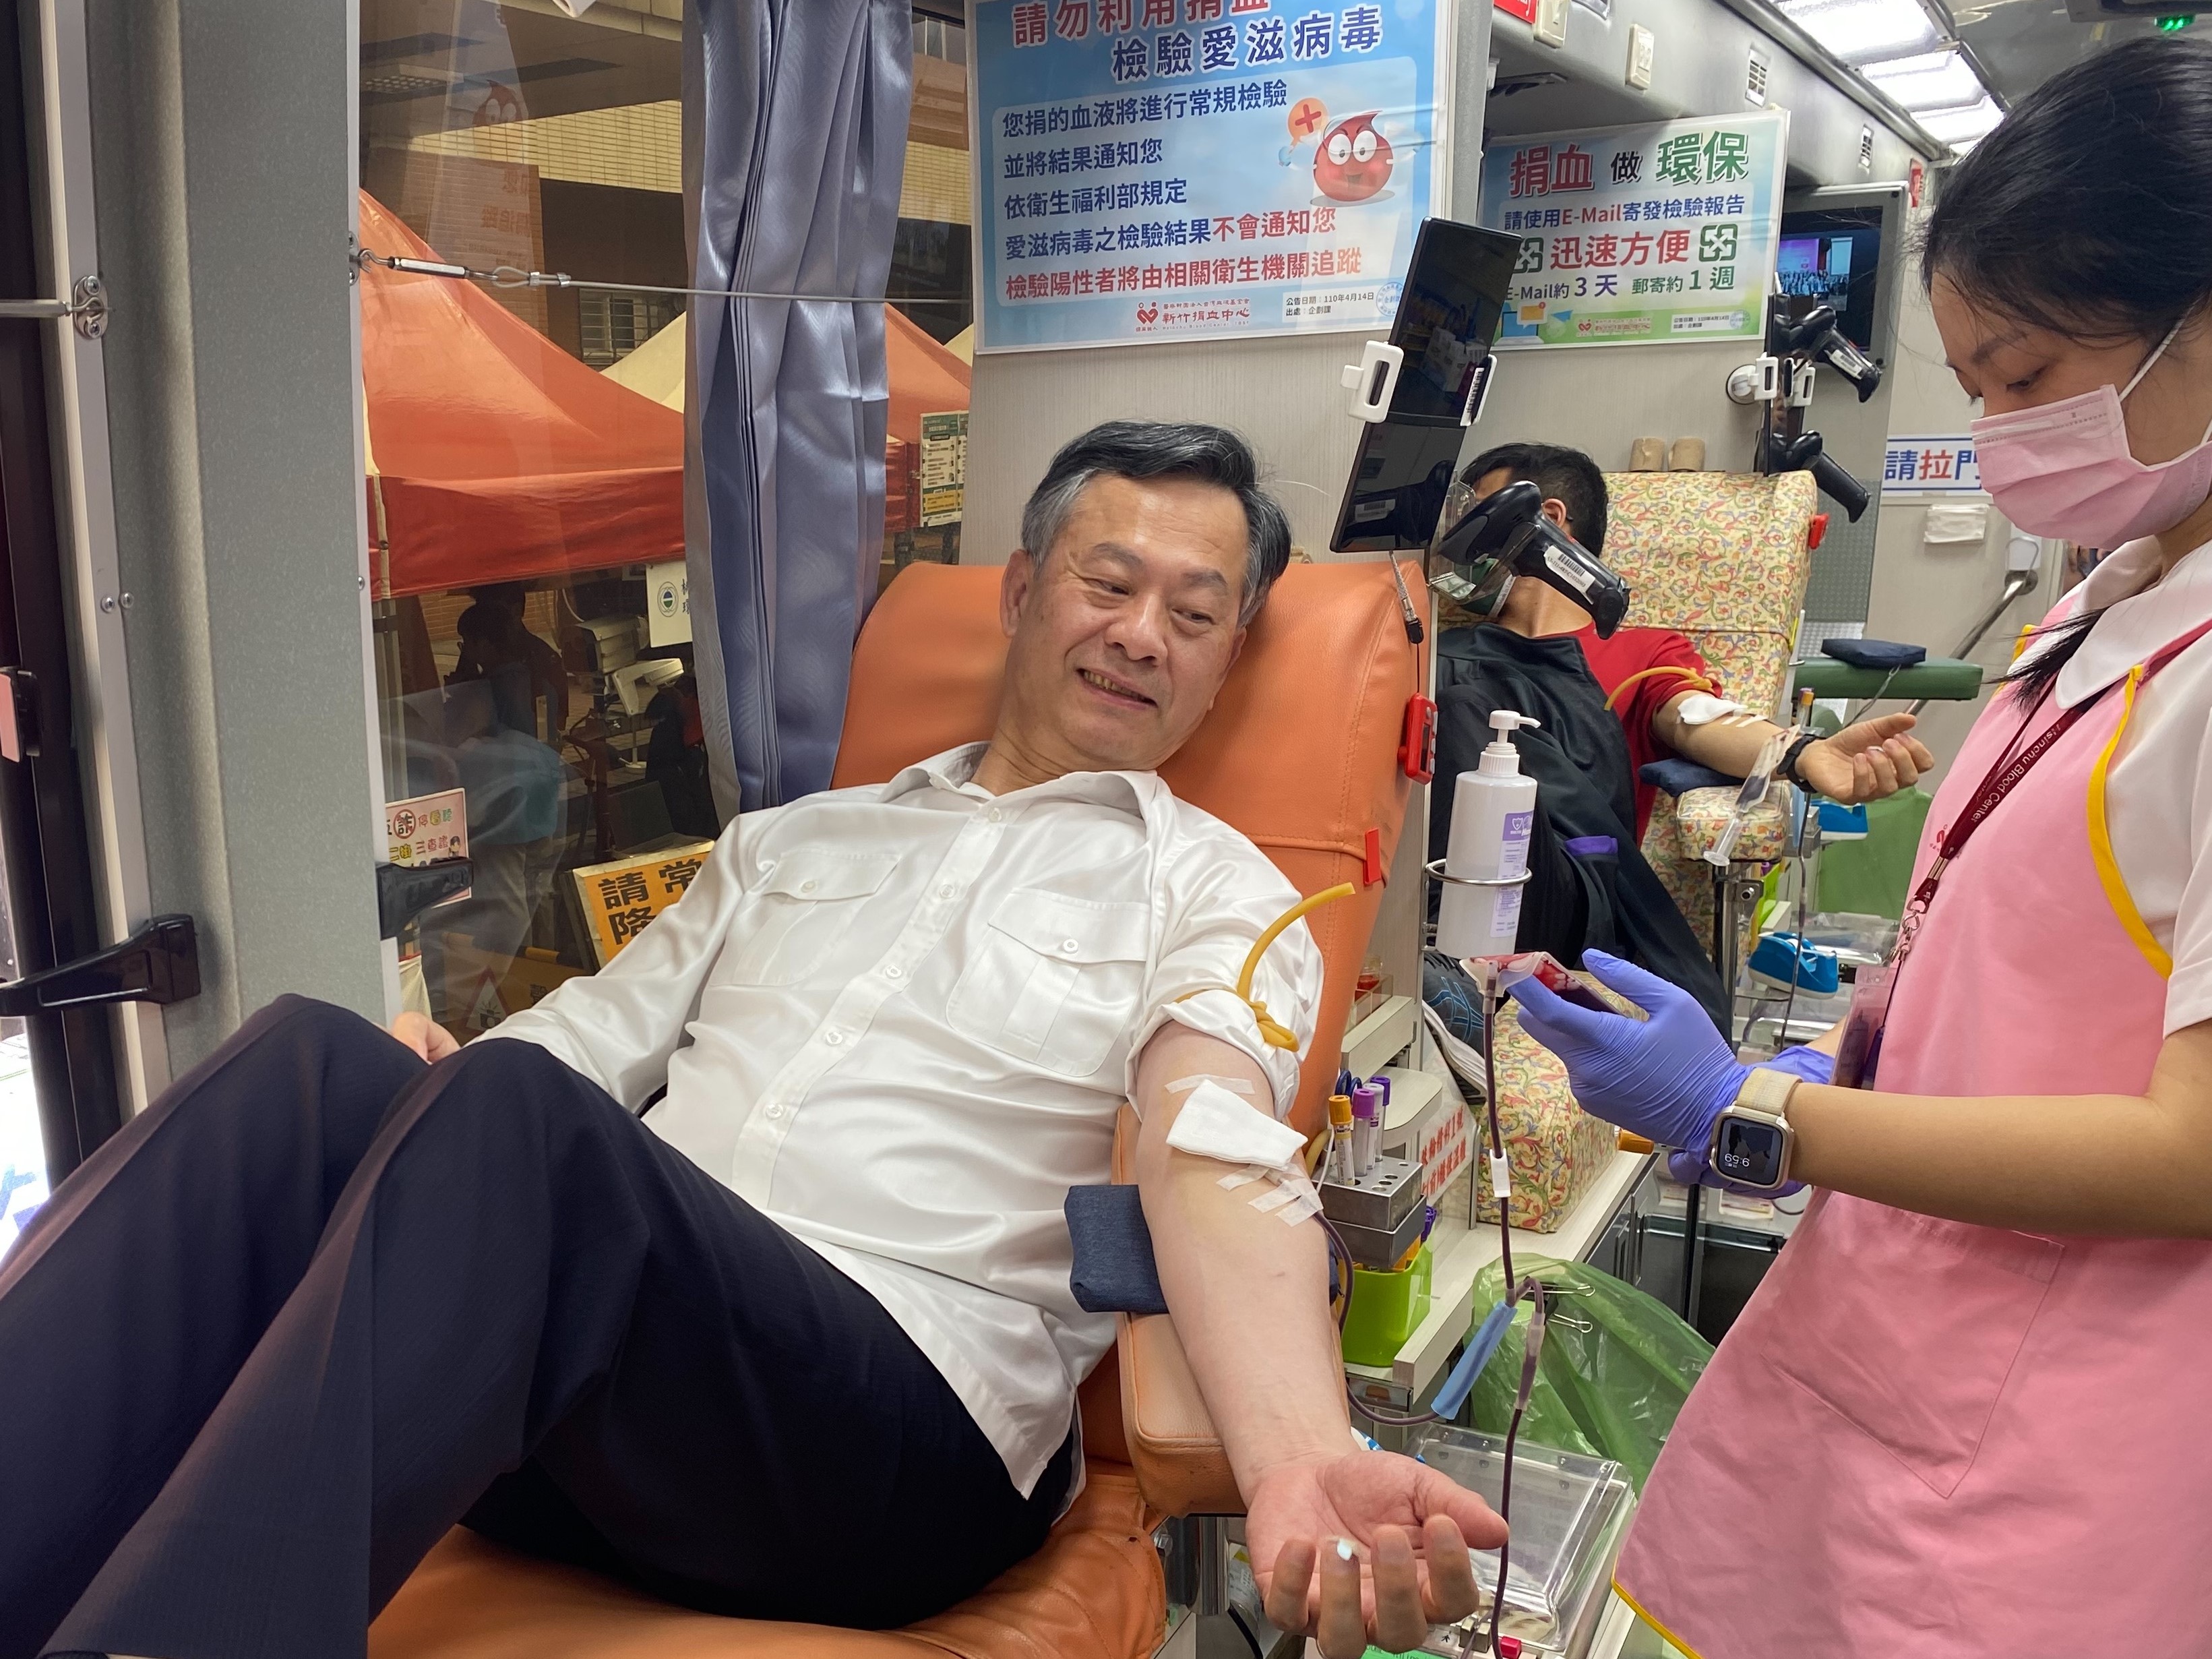 桃园市警察局副局长陈武康也响应活动，热心挽袖捐血。记者周嘉茹／摄影